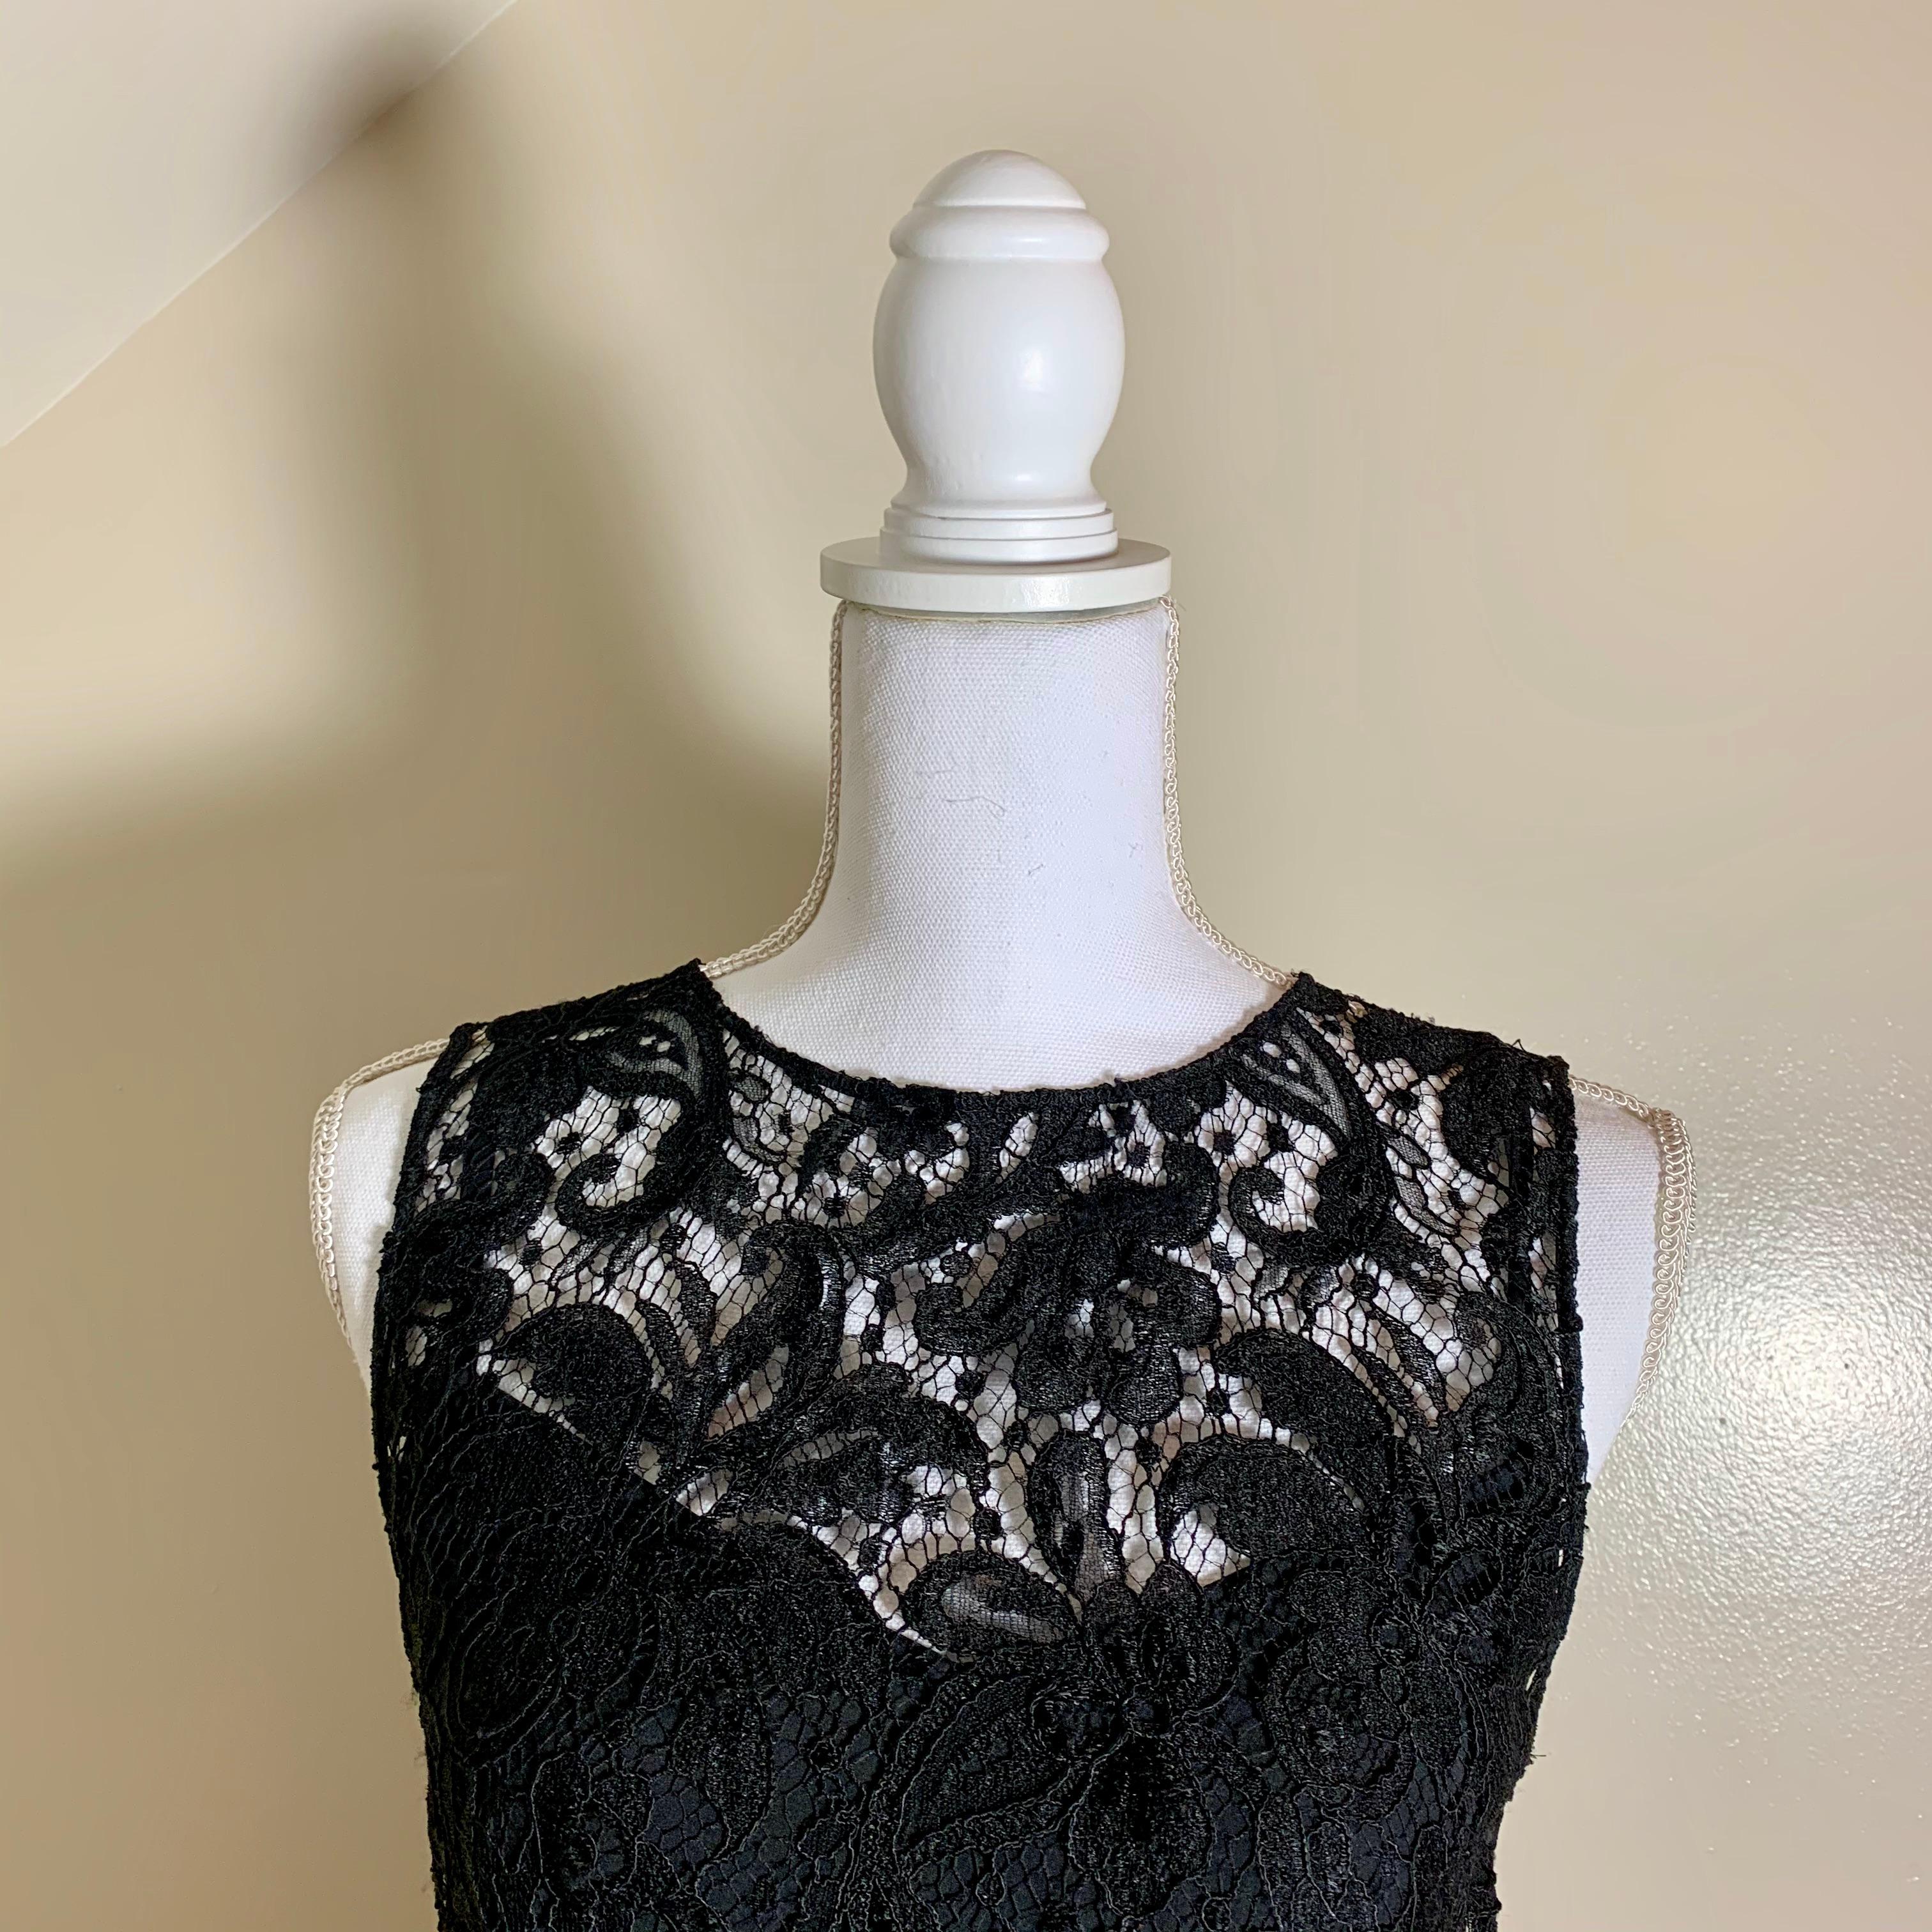 Dolce & Gabbana propose une robe sans manches en dentelle noire doublée. Un design iconique de D&G, que l'on retrouve dans toutes les collections de la marque.

Magnifique dentelle italienne en coton noir, sur une doublure en soie. Le slip et la